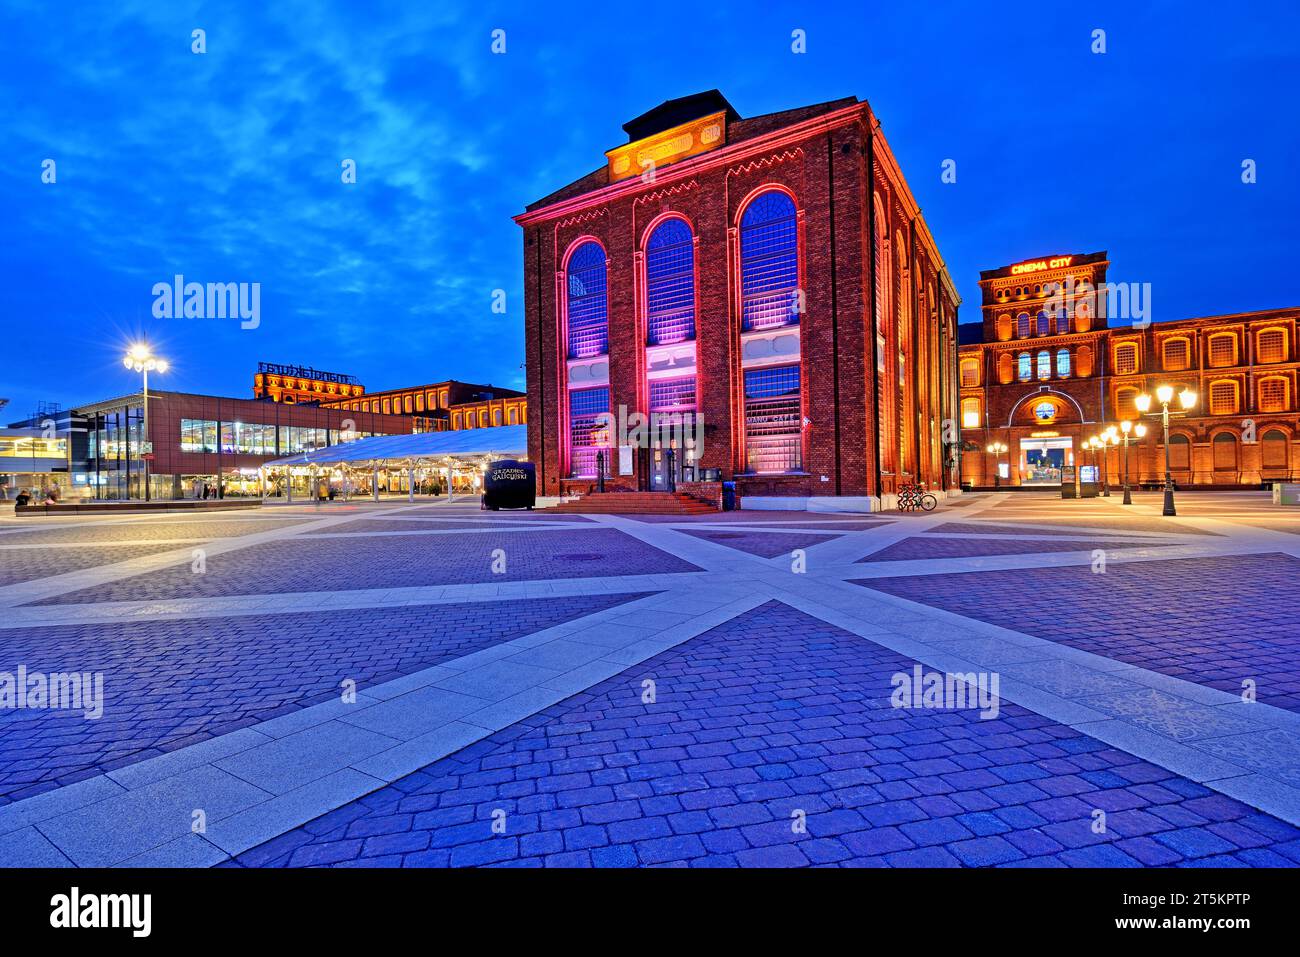 Manufaktura - centro d'arte, centro commerciale e complesso d'intrattenimento a Lodz, Polonia. Foto Stock